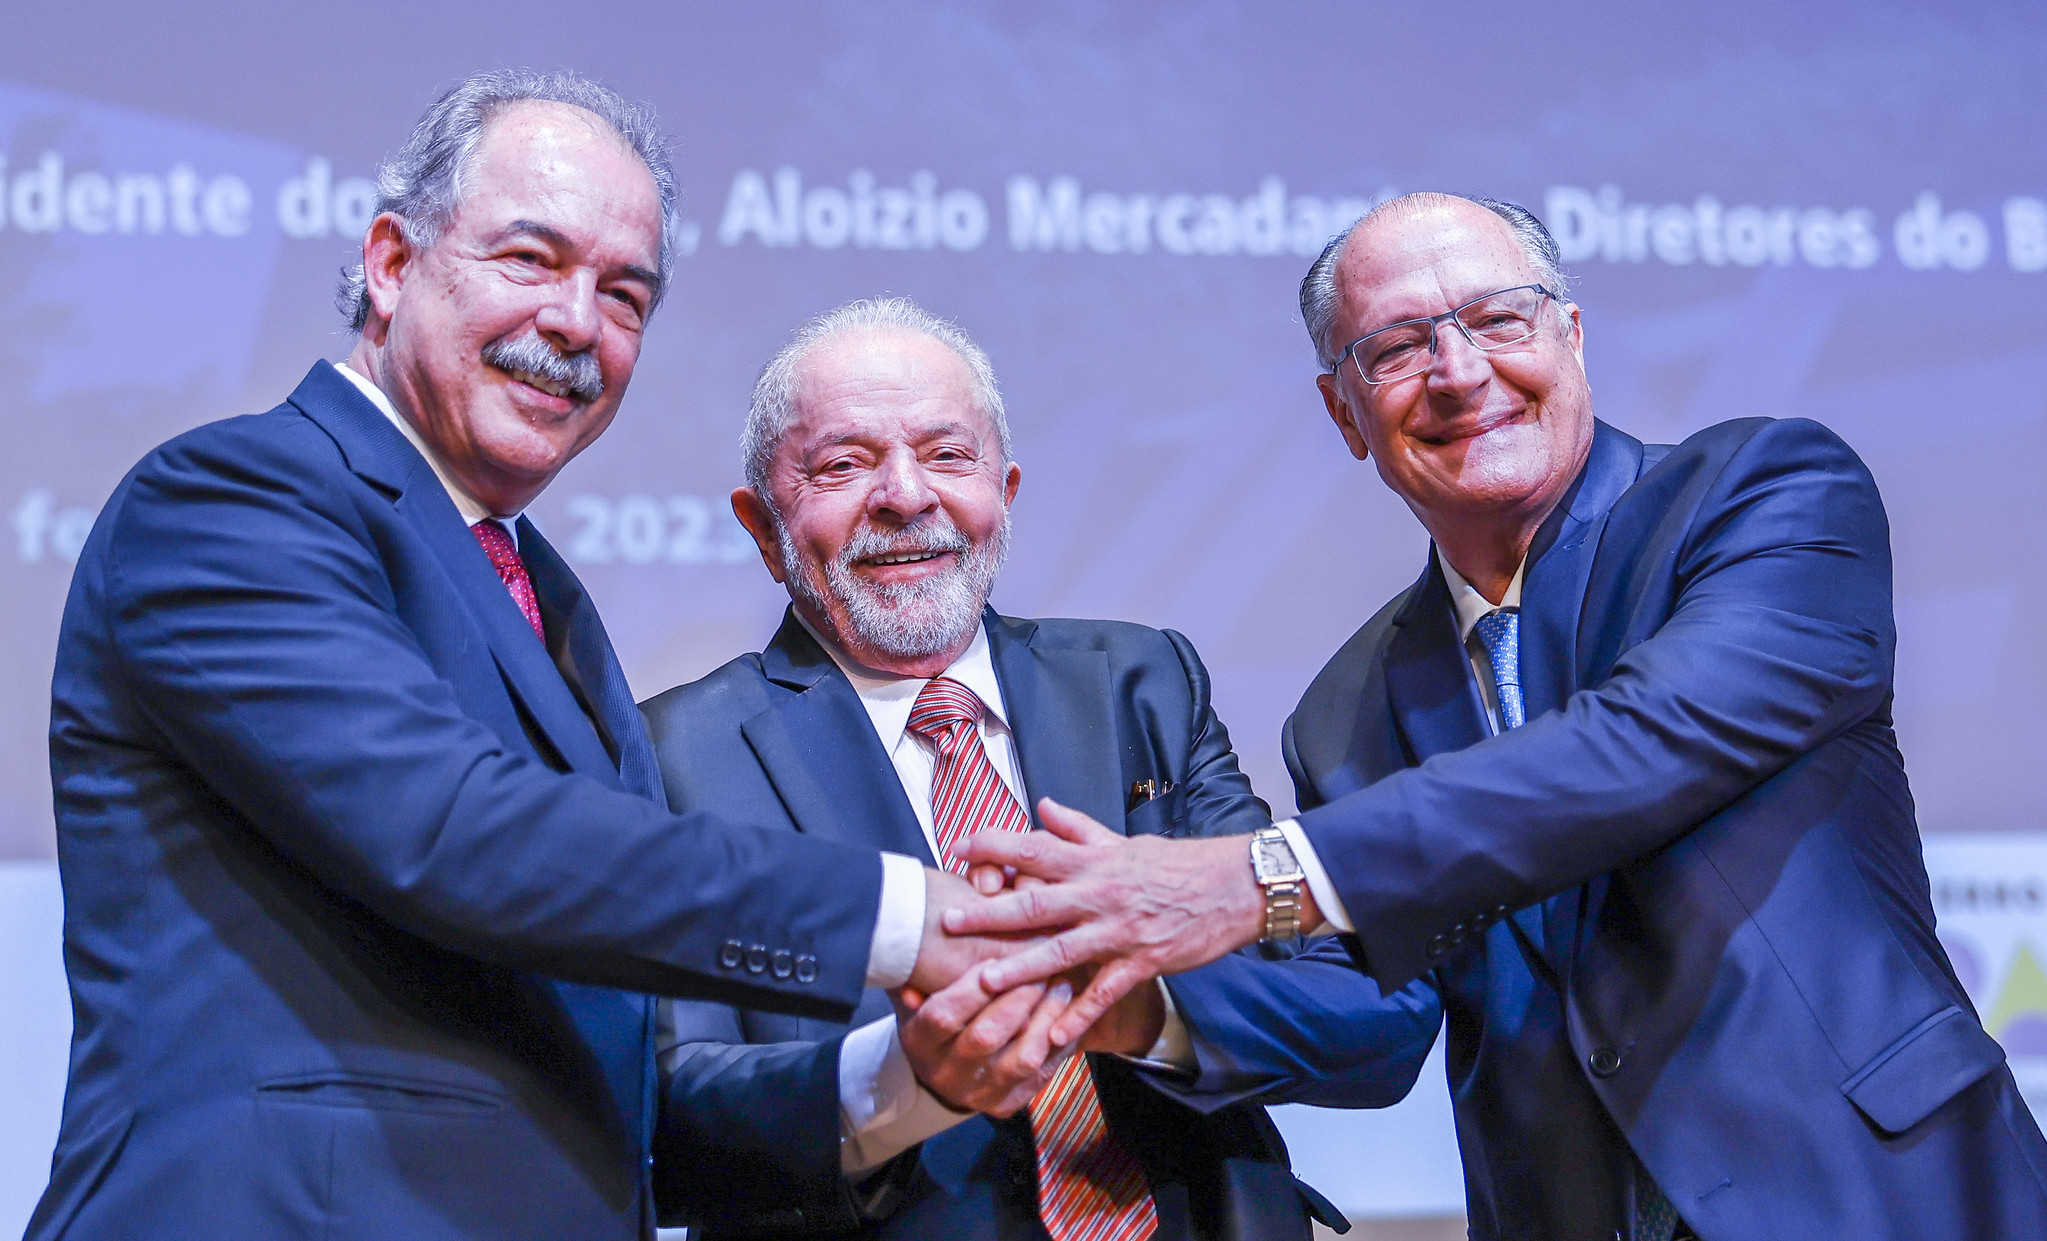 O presidente Lula com o vice Alckmin na cerimônia de posse de Aloizio Mercadante